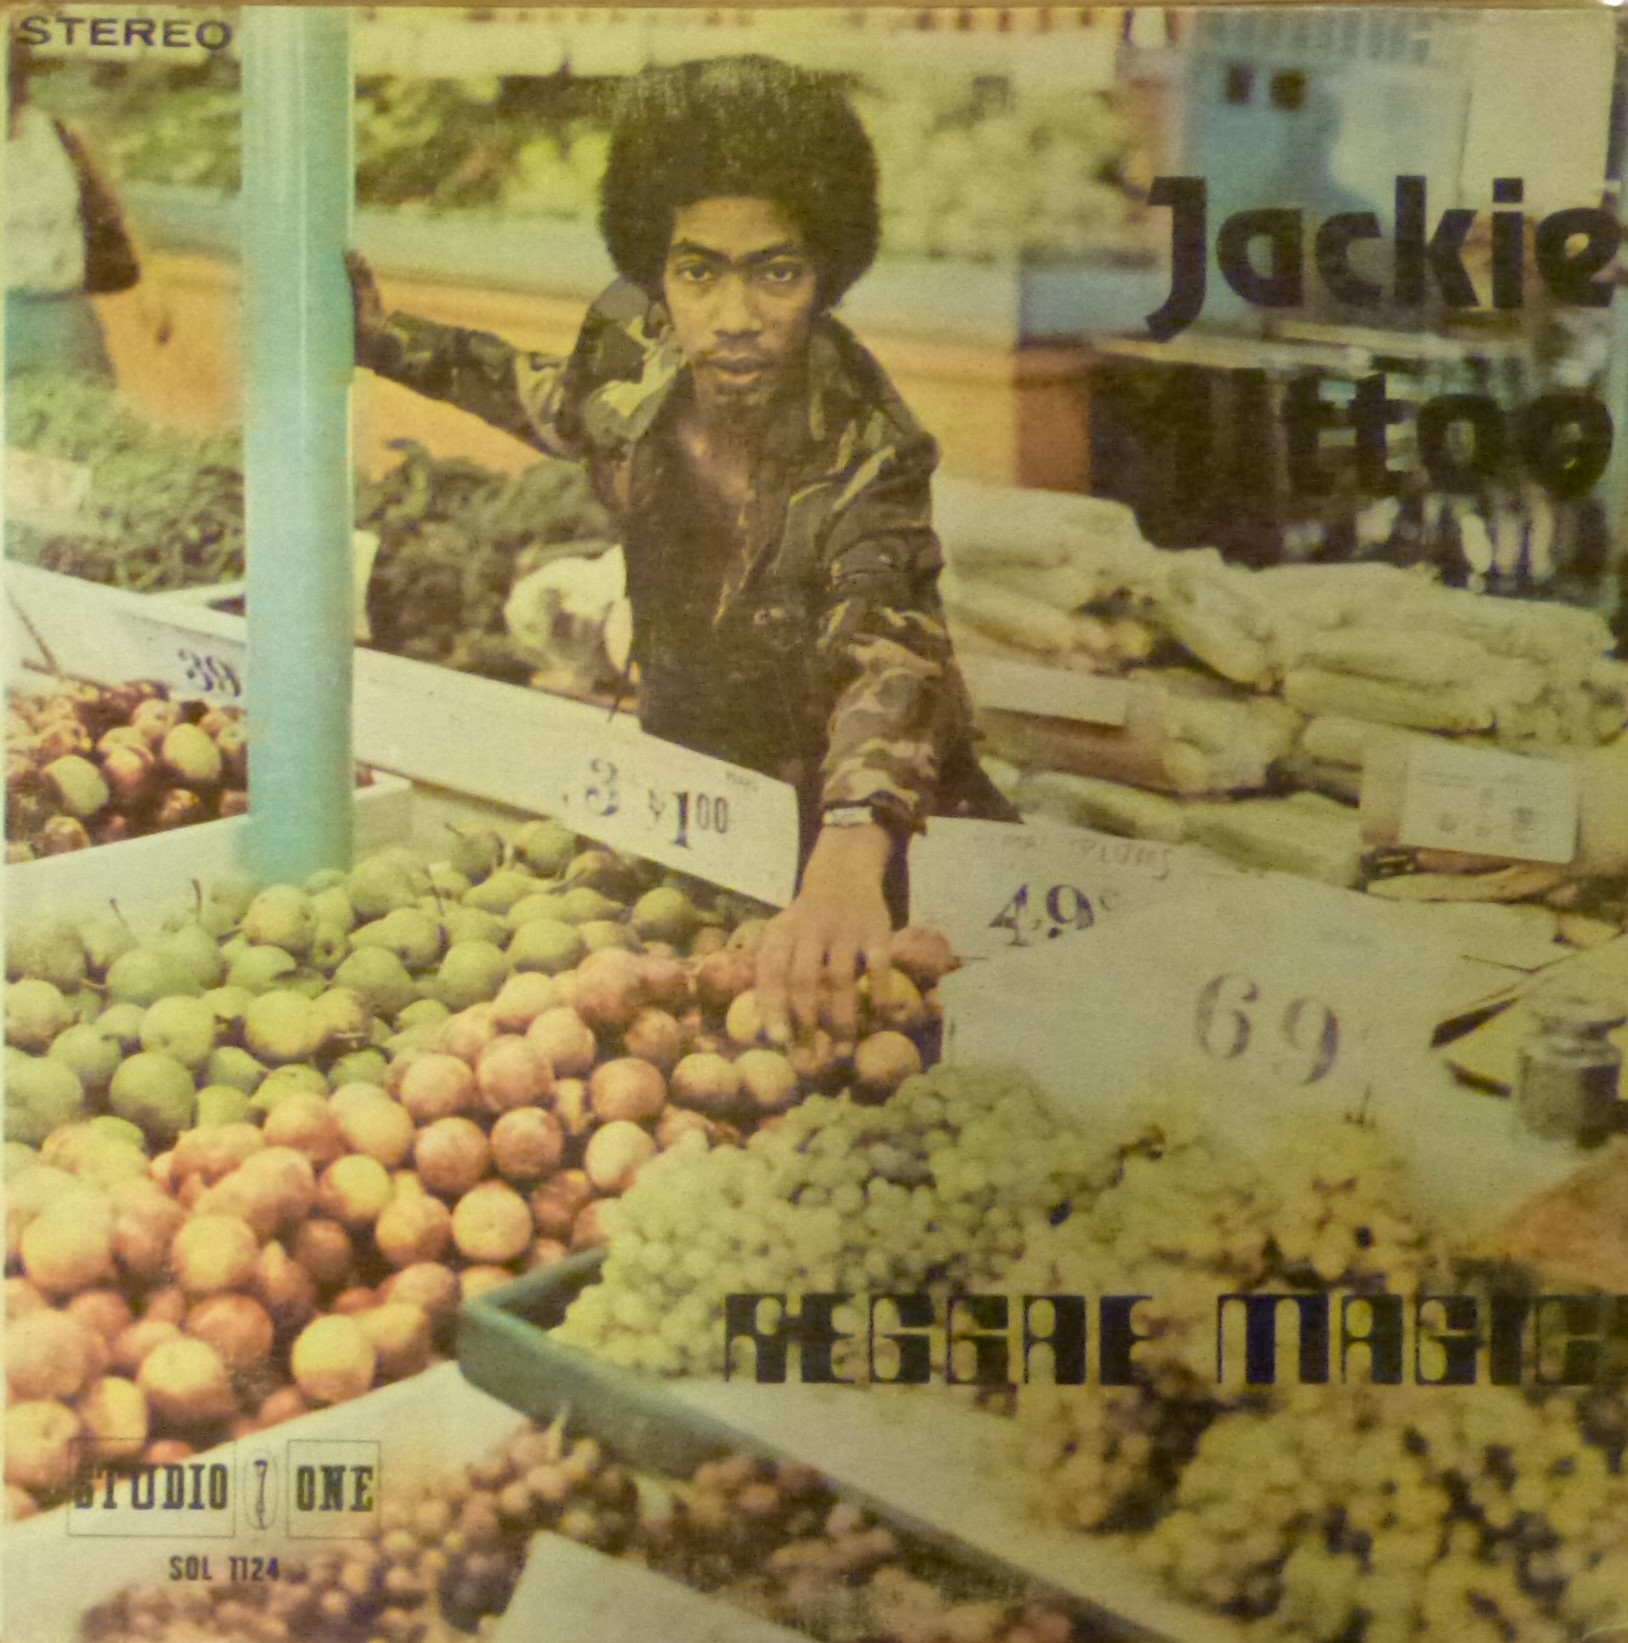 Jackie Mittoo, Reggae Magic